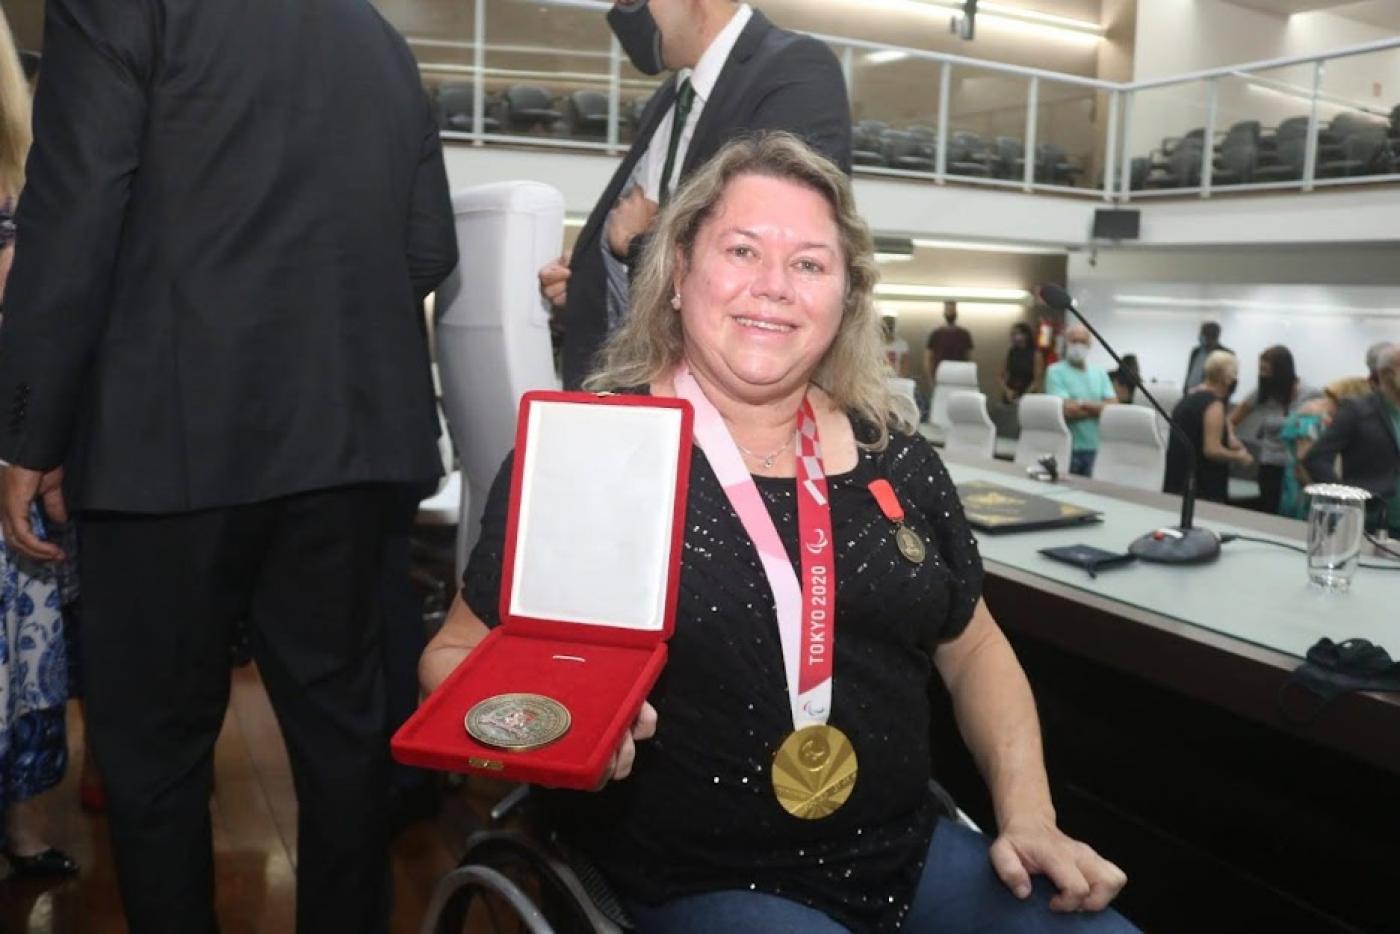 Atleta exibe medalha com medalha paralimpica no peito #paratodosverem